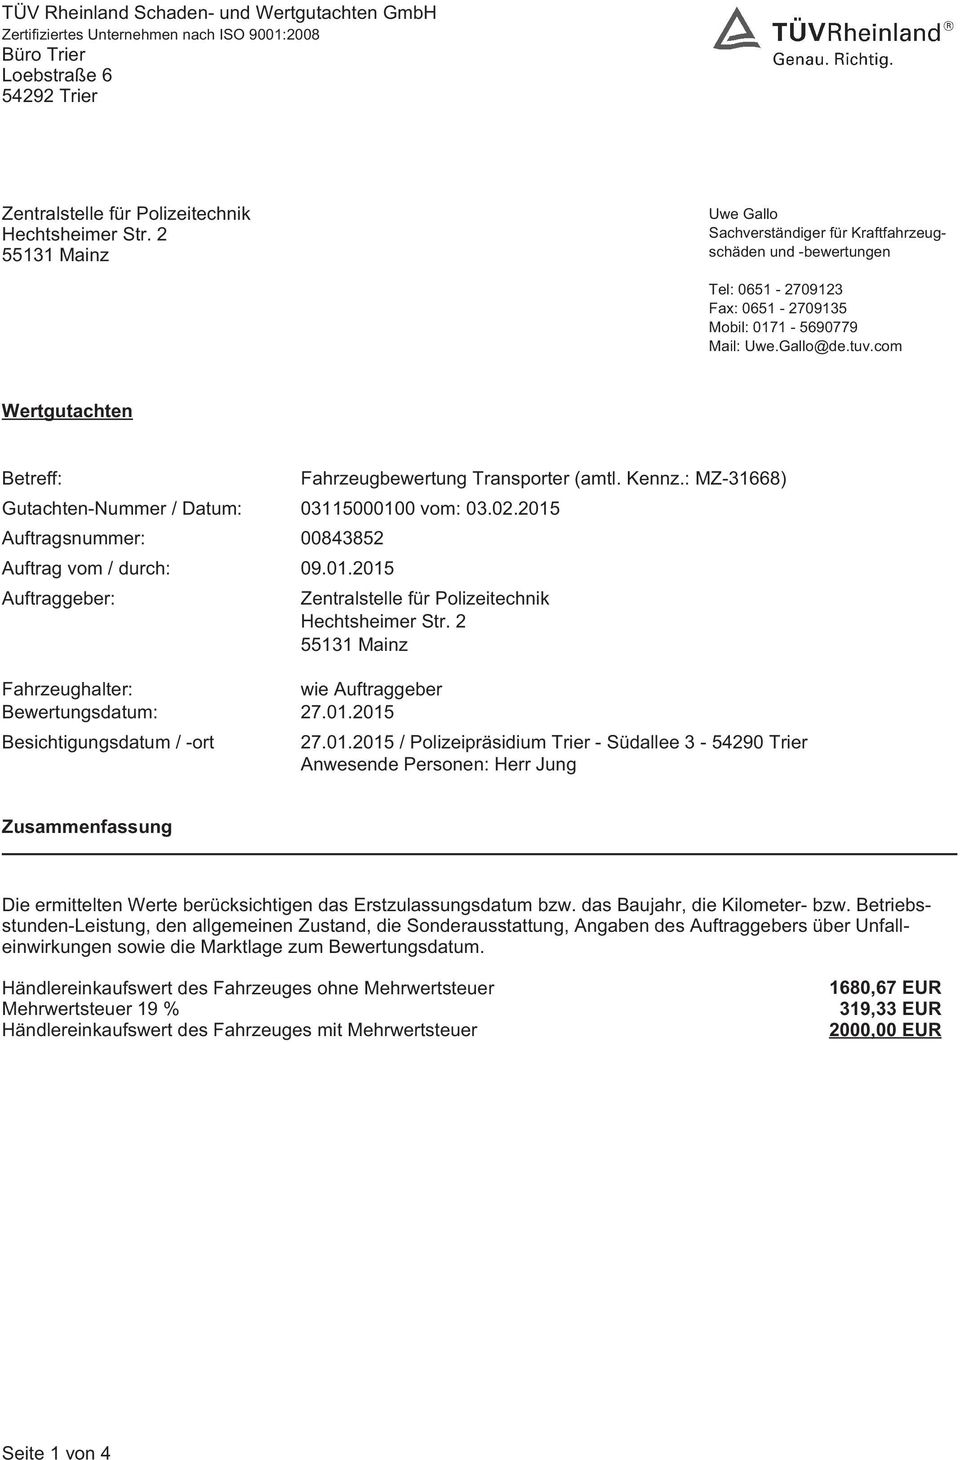 2 55131 Mainz Fahrzeughalter: wie Auftraggeber Bewertungsdatum: 27.01.